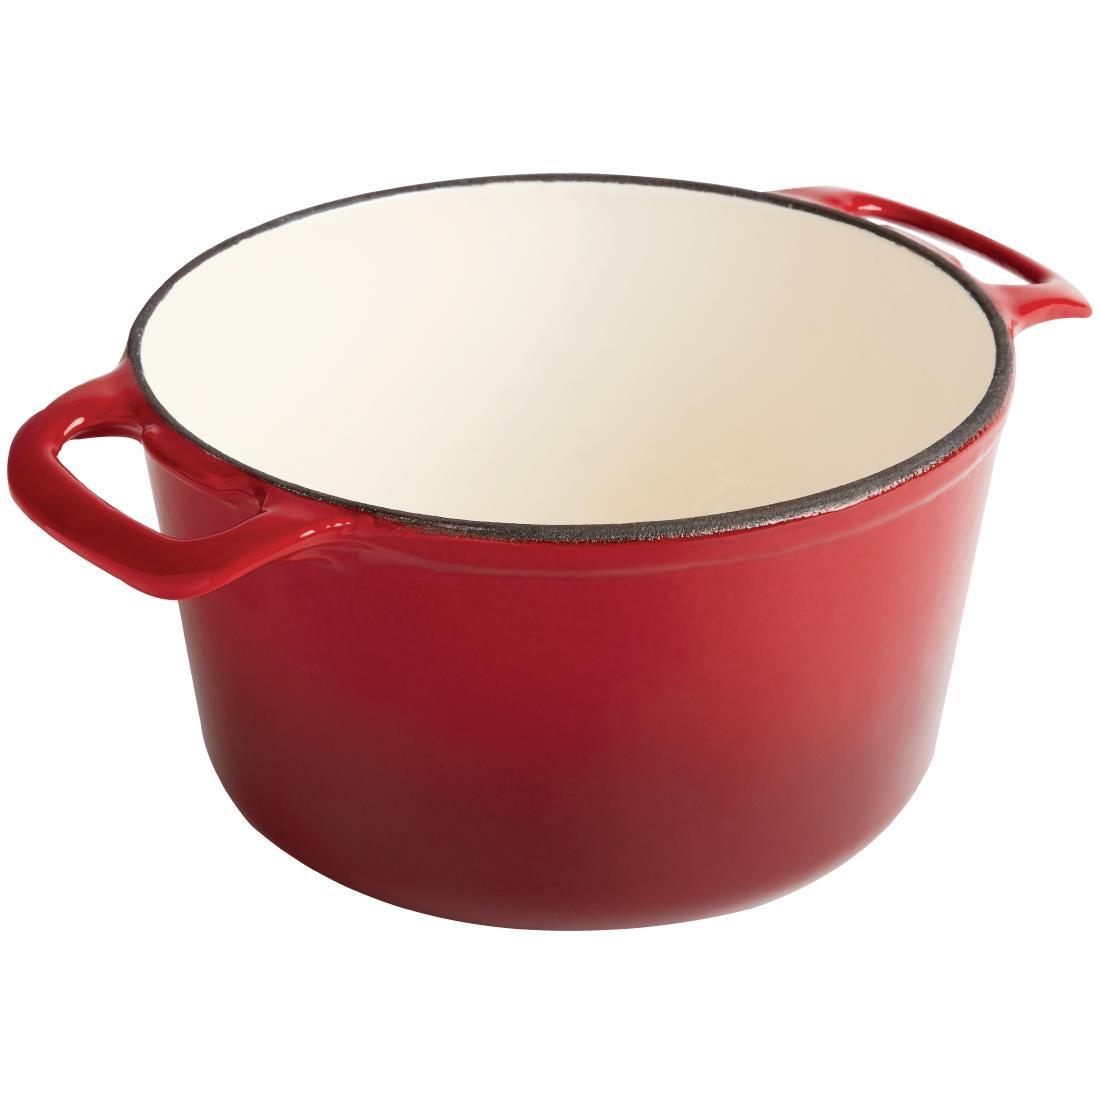 Vogue Red Round Casserole Dish 3.2Ltr - GH304  - 3